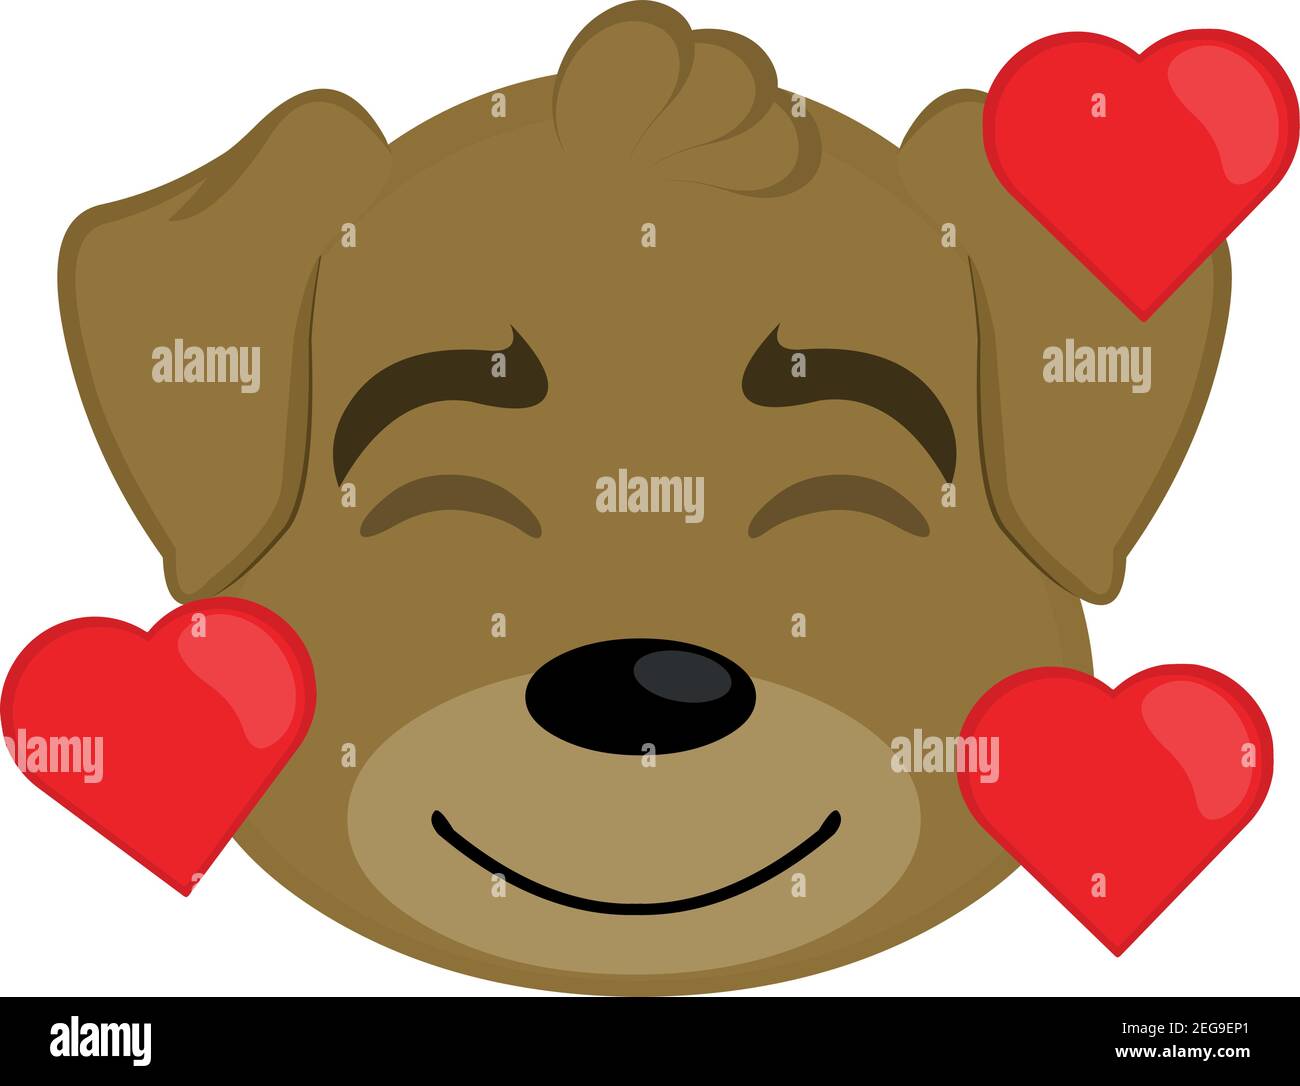 Vektor-Illustration eines Emoticons des Kopfes eines Cartoon-Hundes, mit einem Ausdruck und Emotion der Freude und Liebe, umgeben von Formen von Herzen Stock Vektor